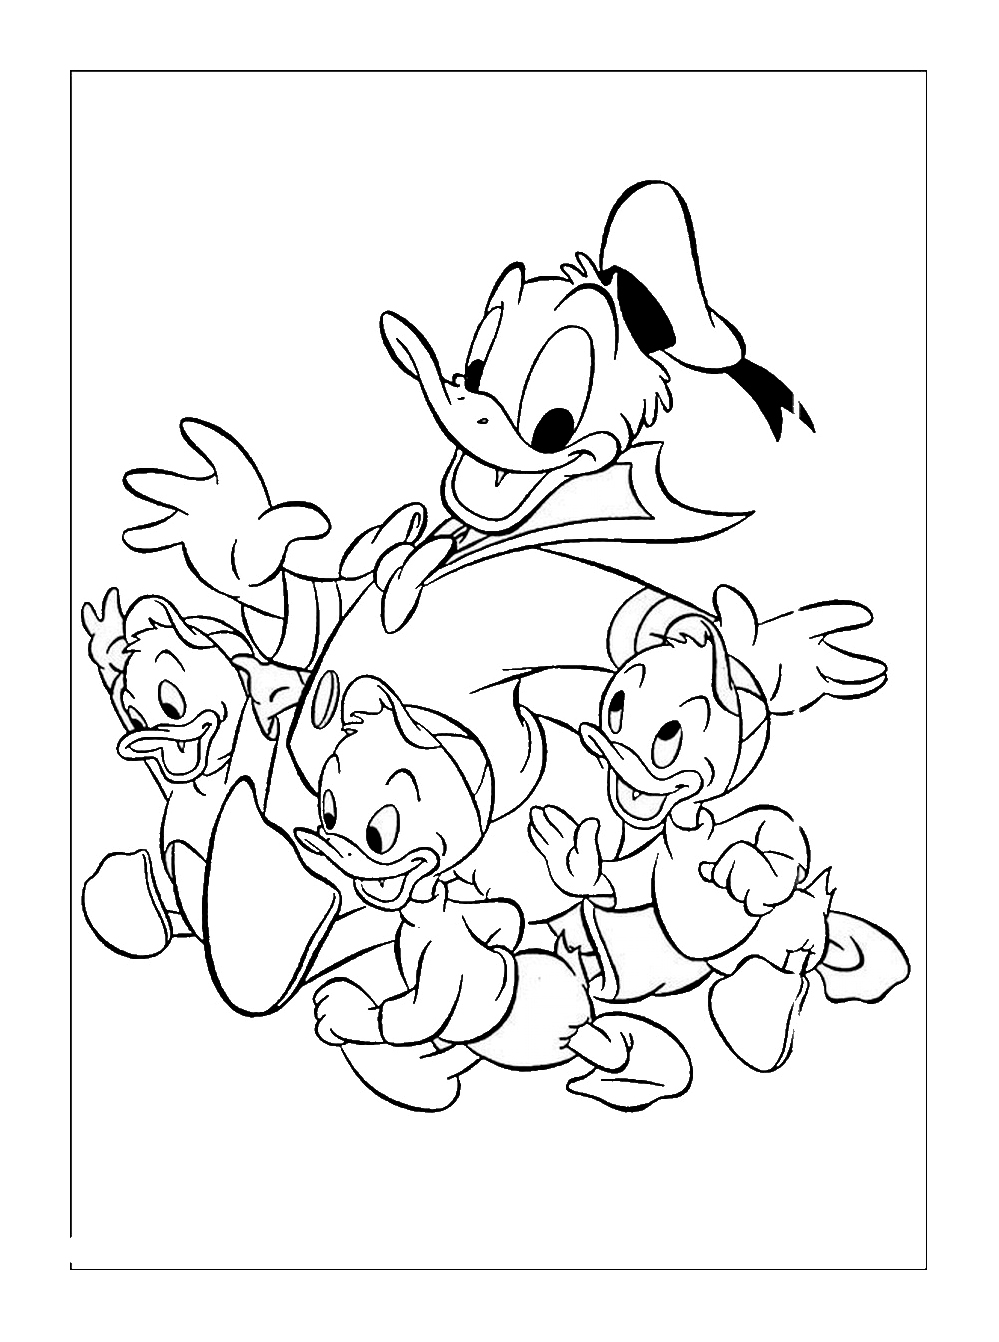 Donald et ses neveux à colorier